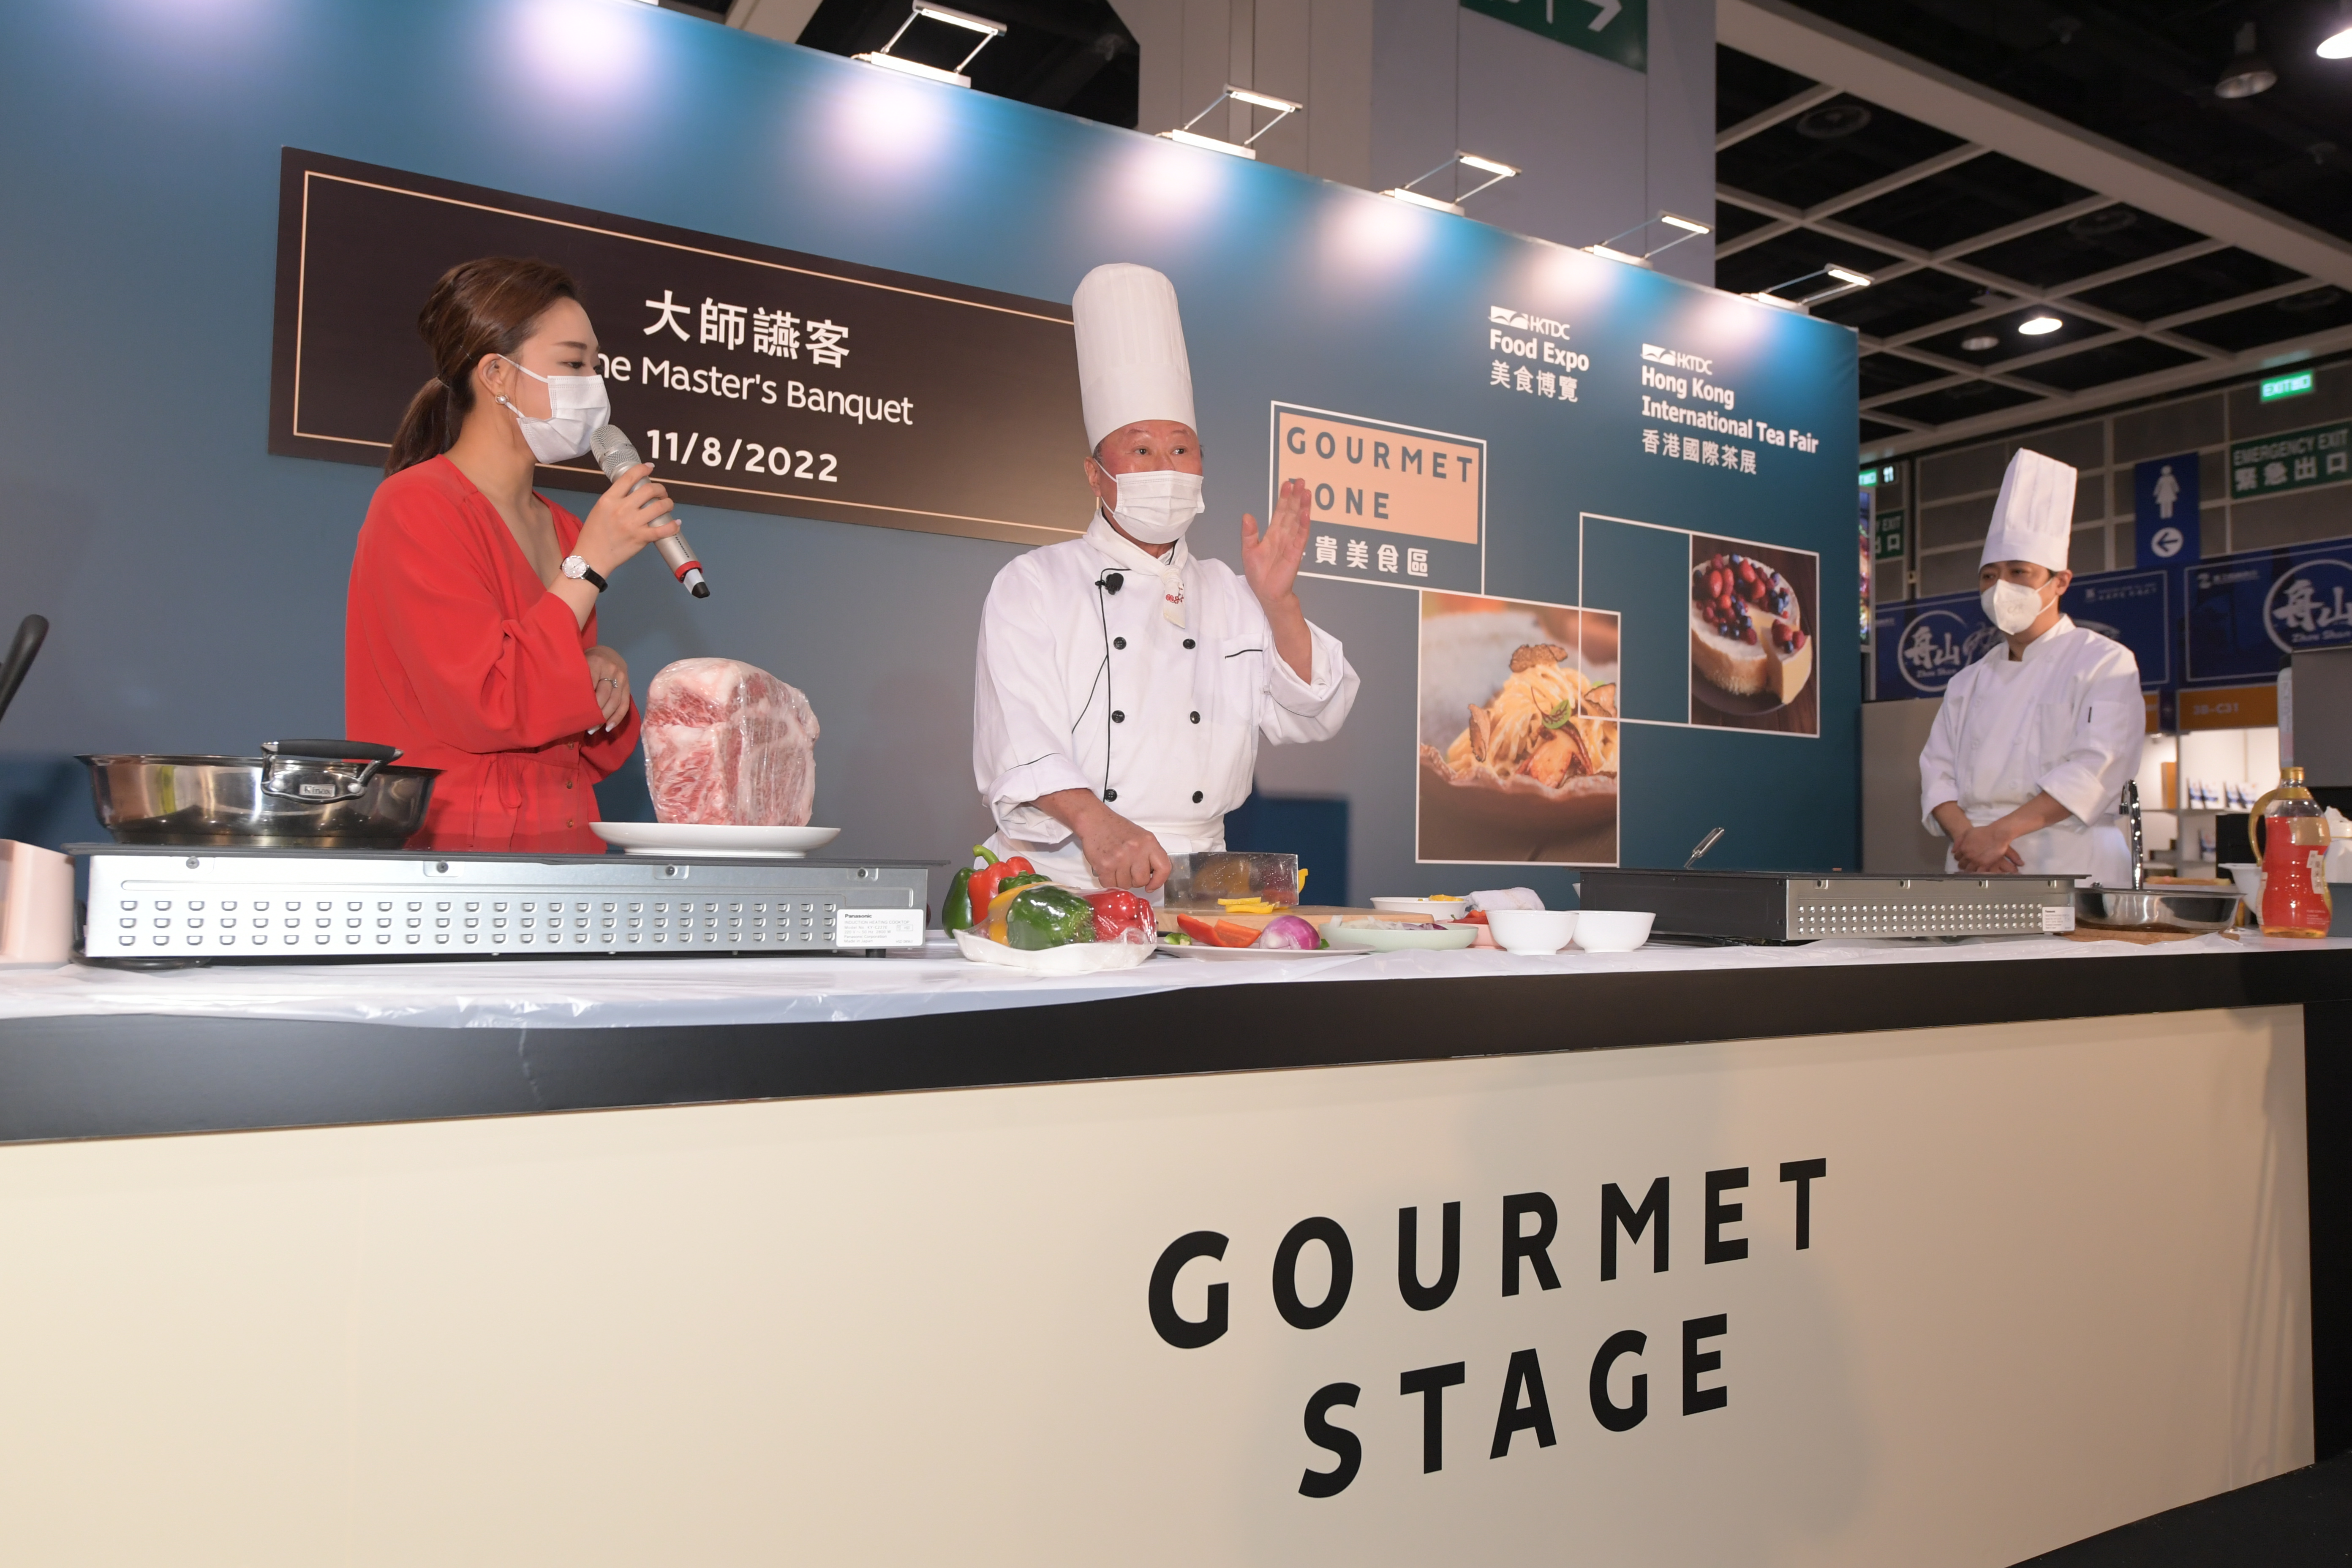 美食博览特设「尊贵美食区」，展示环球顶级佳肴，当中请来星级名厨作烹饪示范，庆祝香港特别行政区成立25 周年。